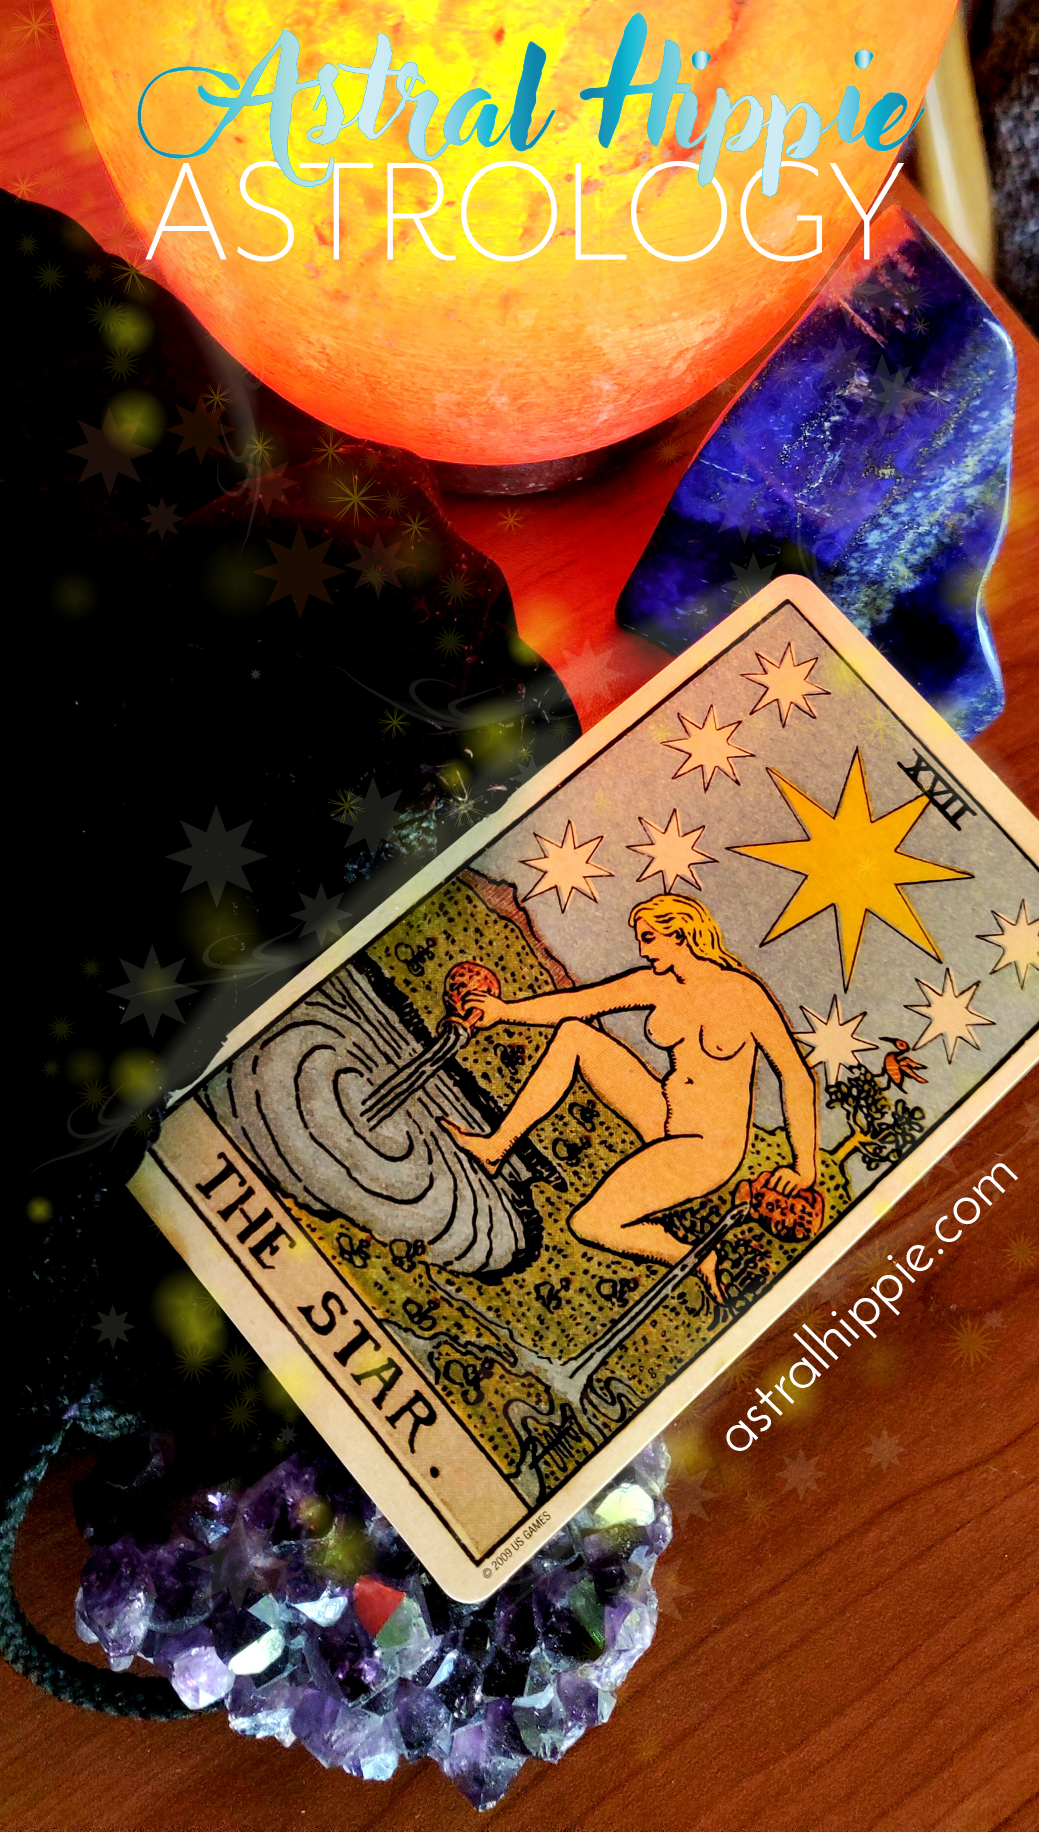 The star Tarot card